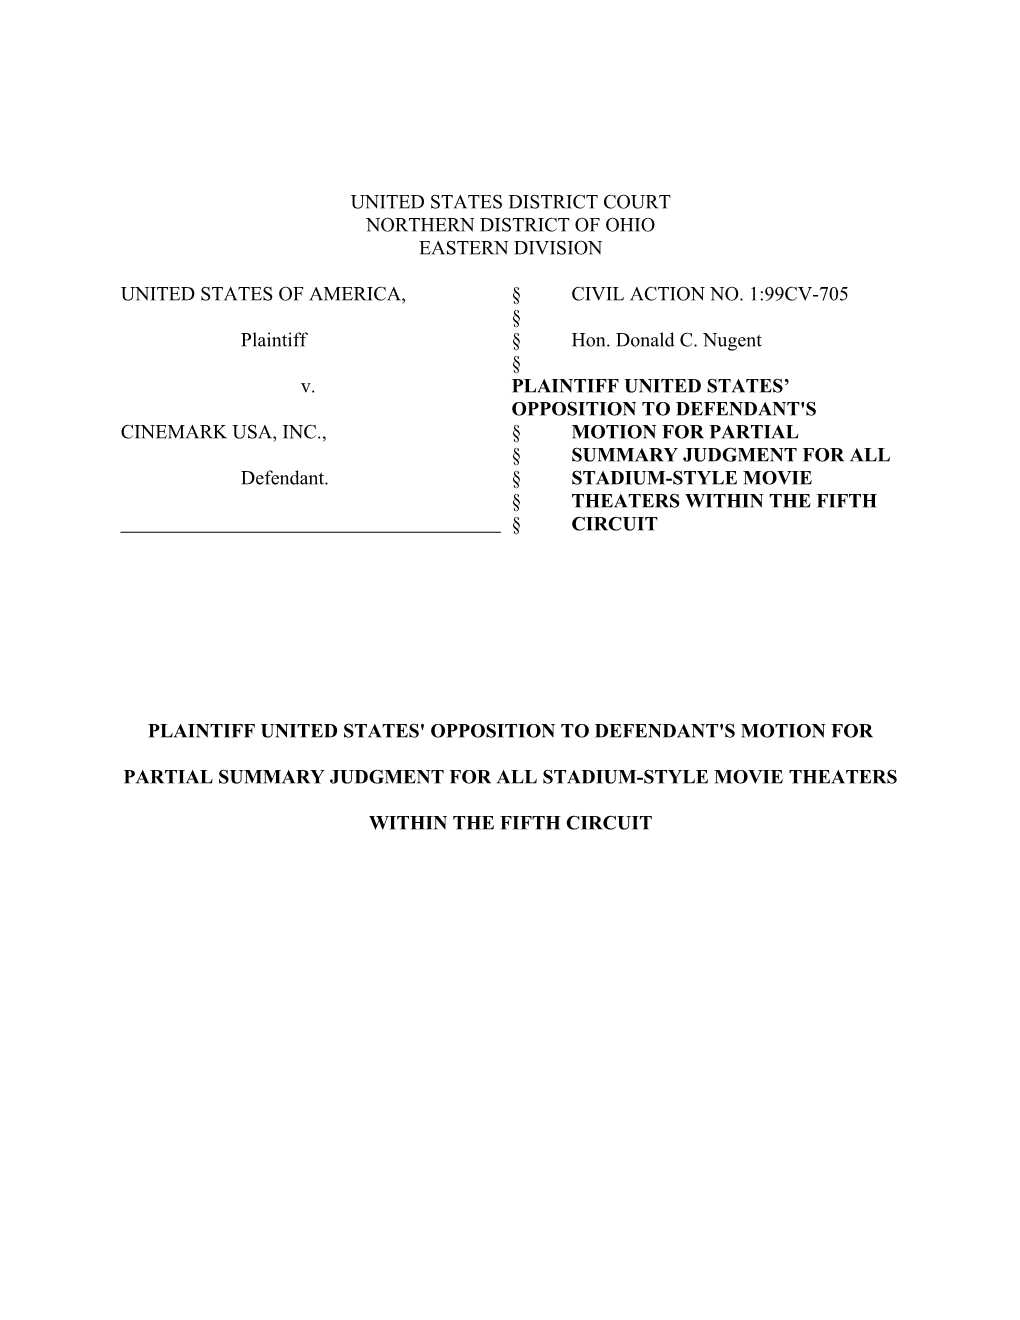 US V. Cinemark USA, Inc.: Plaintiff US' Opposition to Defendant's Motion for Partial SJ